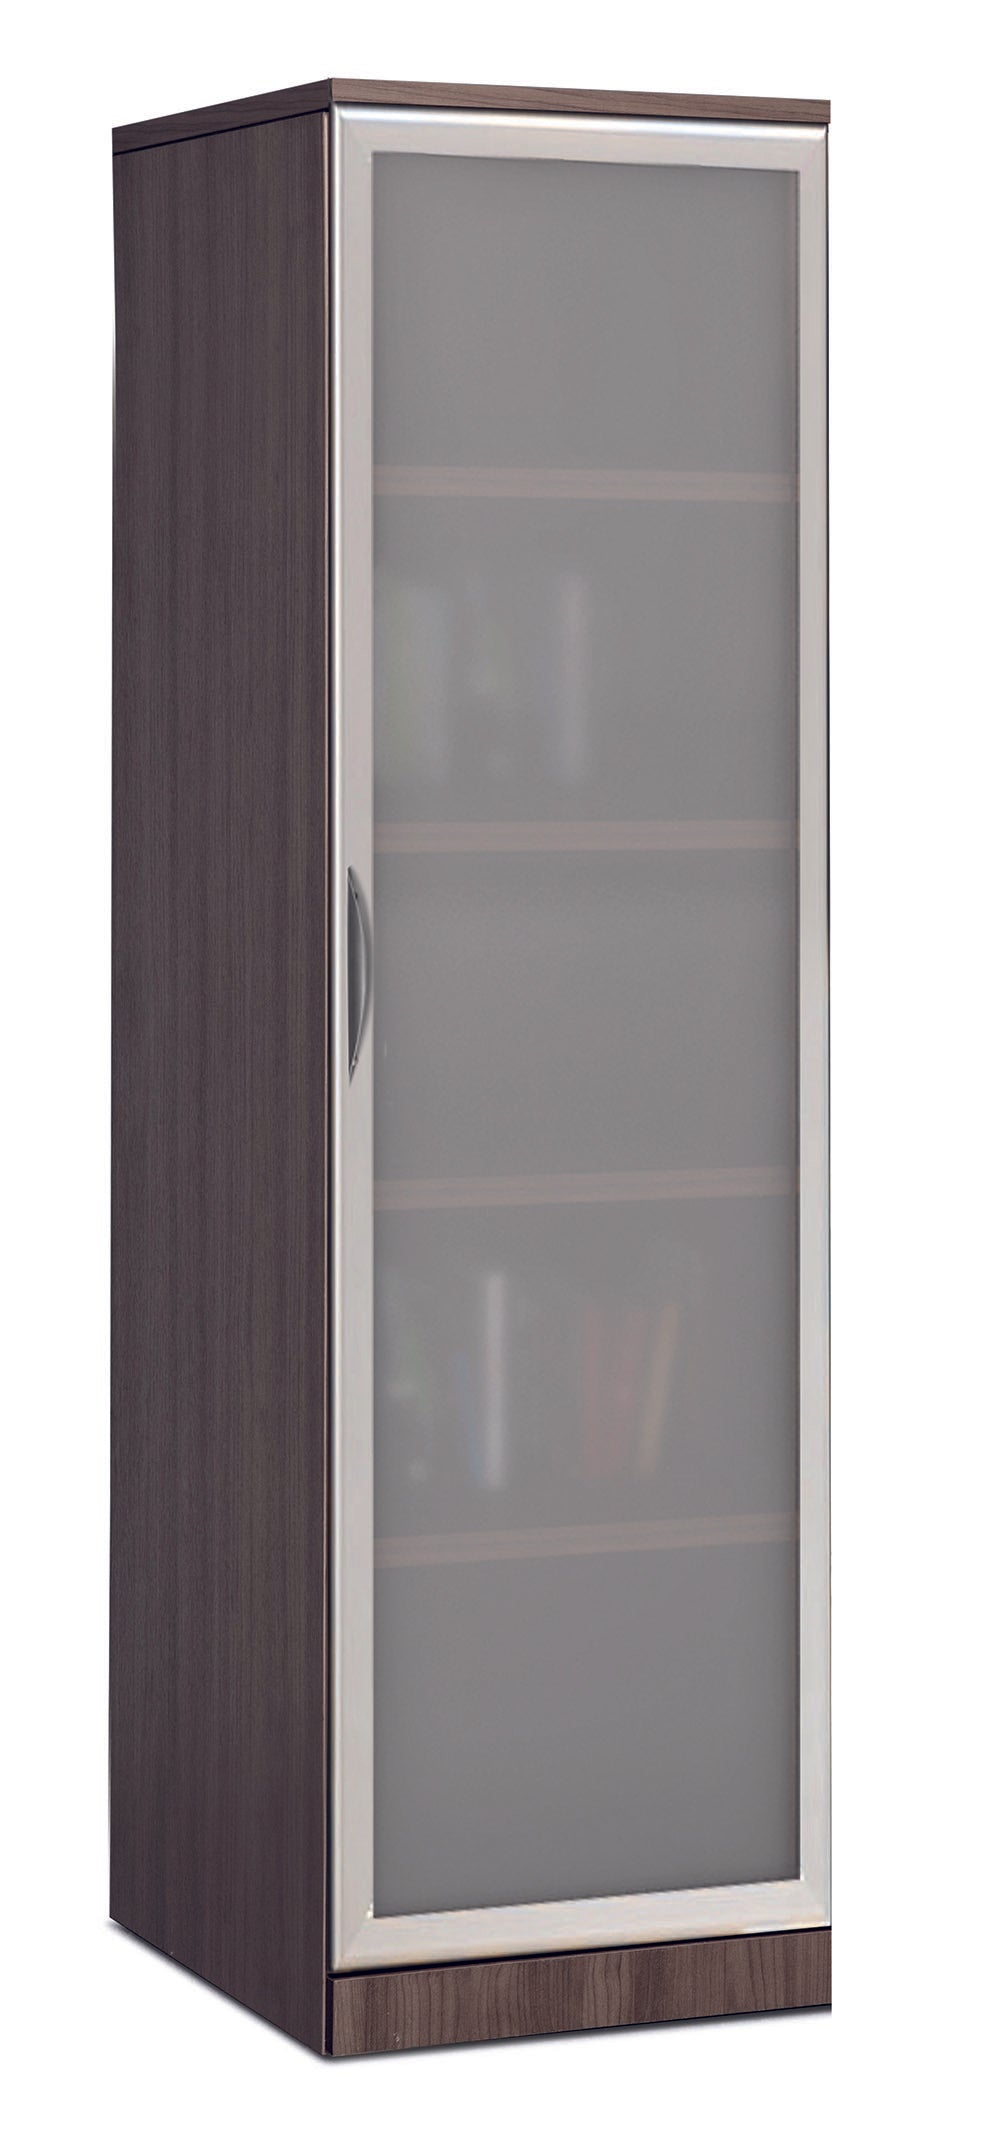 66"x18" Storage Cabinet with Glass Door